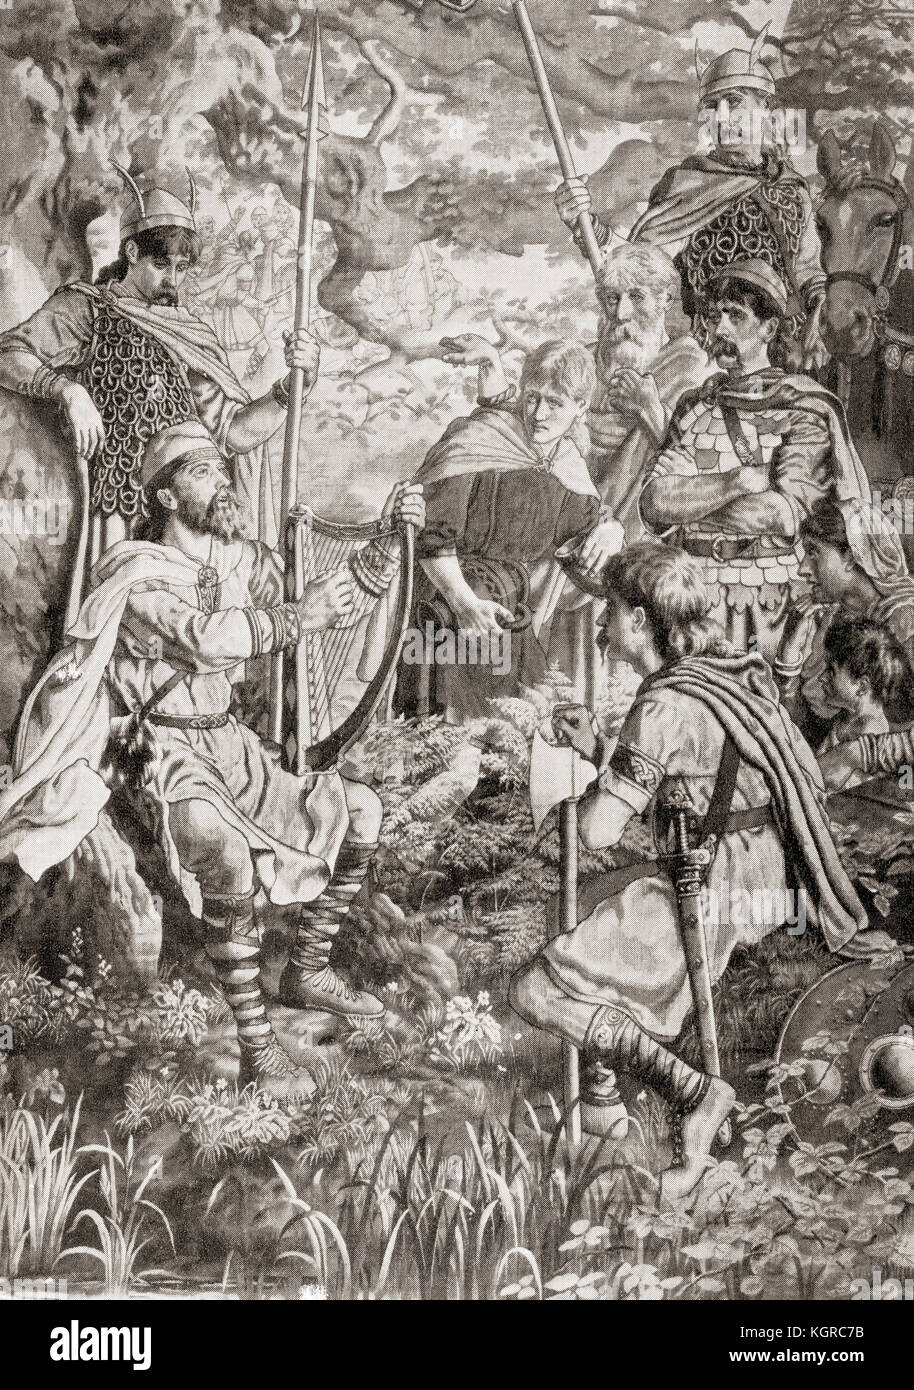 Le roi Alfred déguisé en un minstrel flânant et jouant de la harpe dans le camp danois de Guthrum, 878. Alfred le Grand, 849 – 899. Roi du Wessex. Extrait de l'Histoire des Nations de Hutchinson, publié en 1915. Banque D'Images